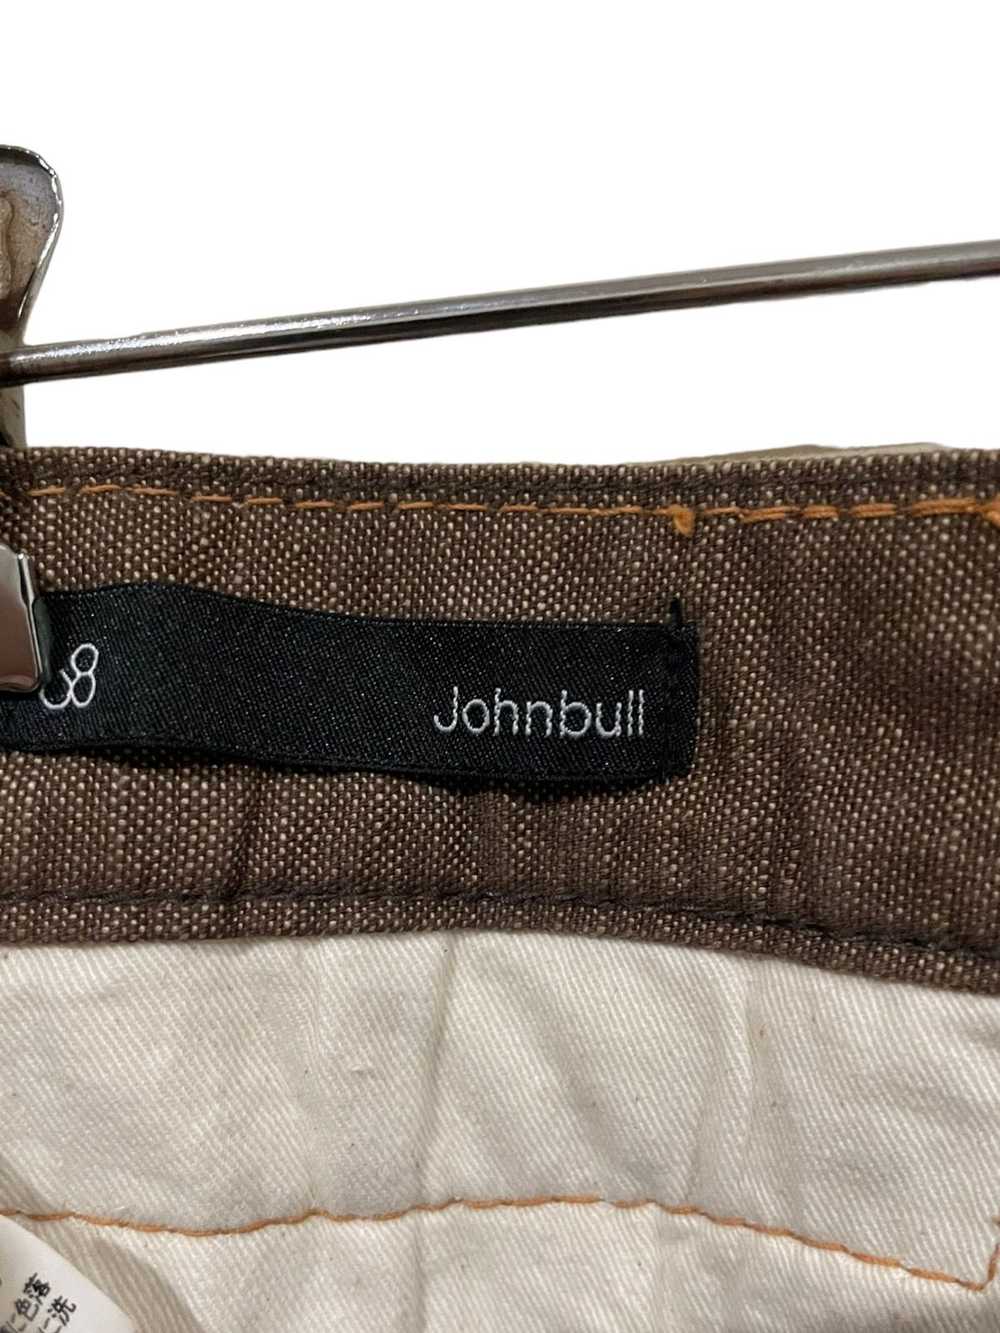 John Bull John Bull Cargo Jeans - image 7